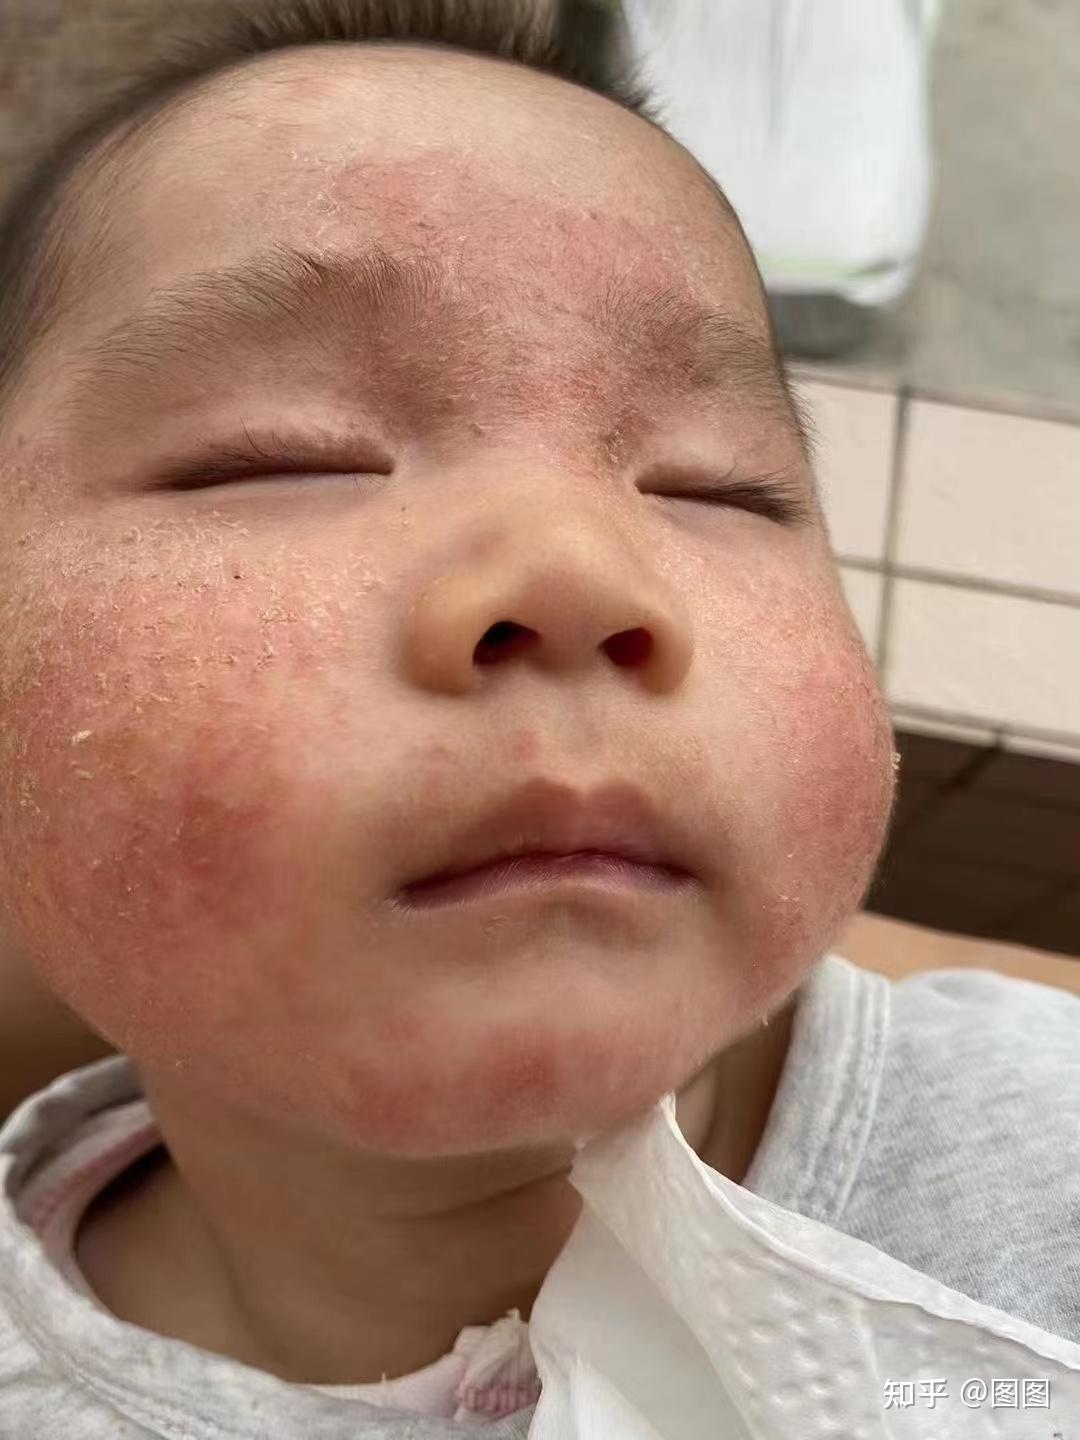 婴儿干燥性湿疹图片（冬天孩子反复湿疹）-幼儿百科-魔术铺